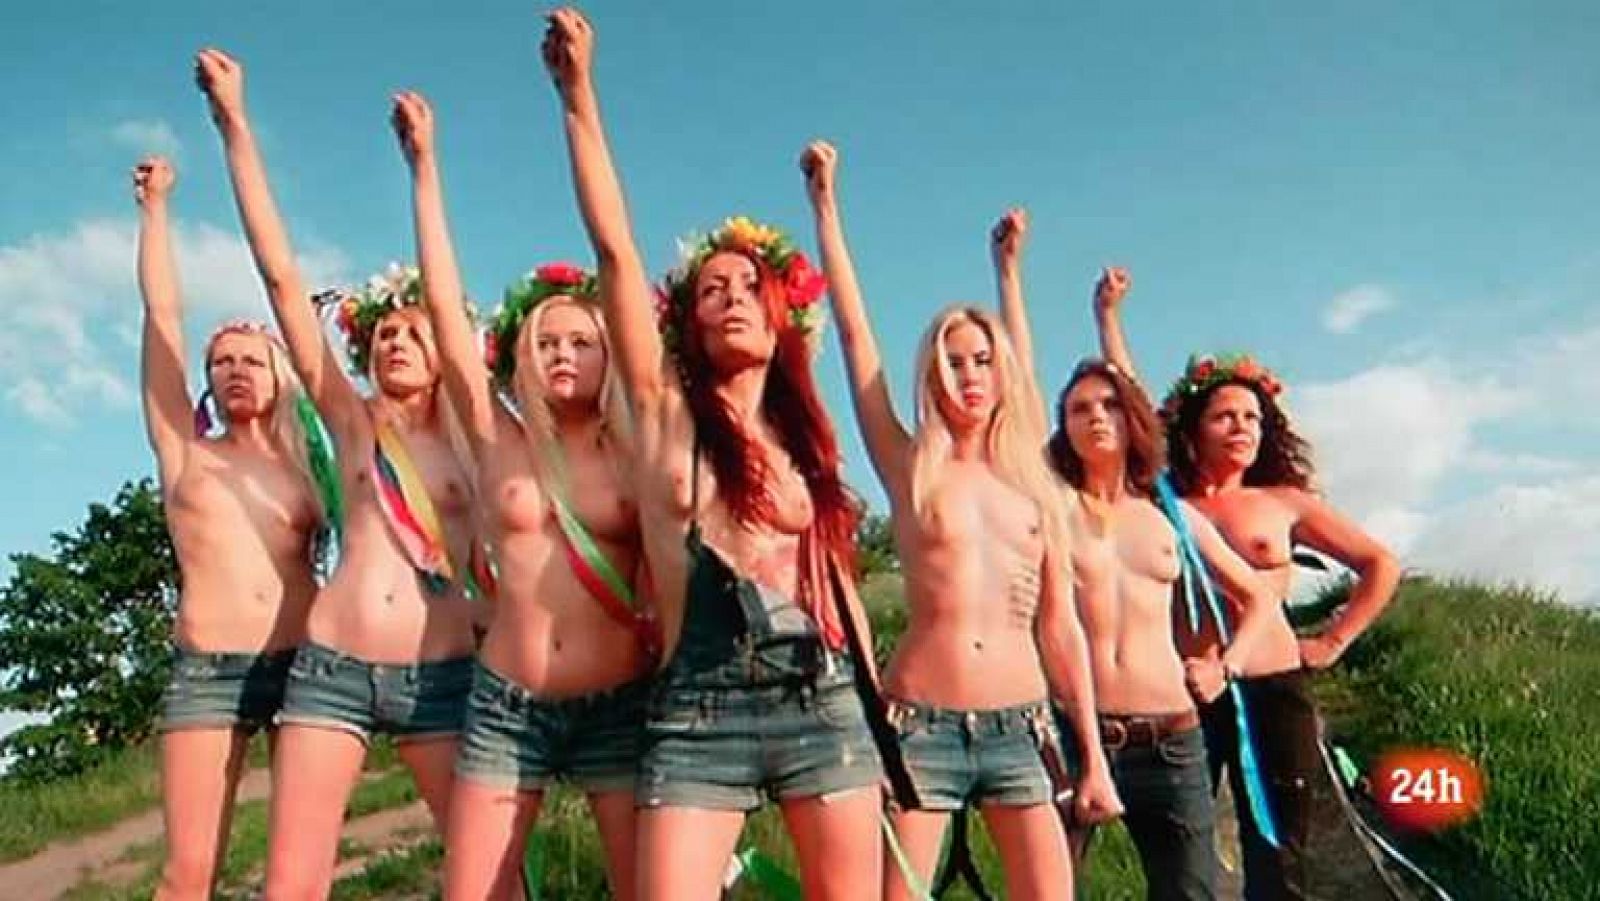 Cámara abierta 2.0 - Las activistas de Femen.org, Sandra Ibarra y Love of Lesbian - 23/06/12